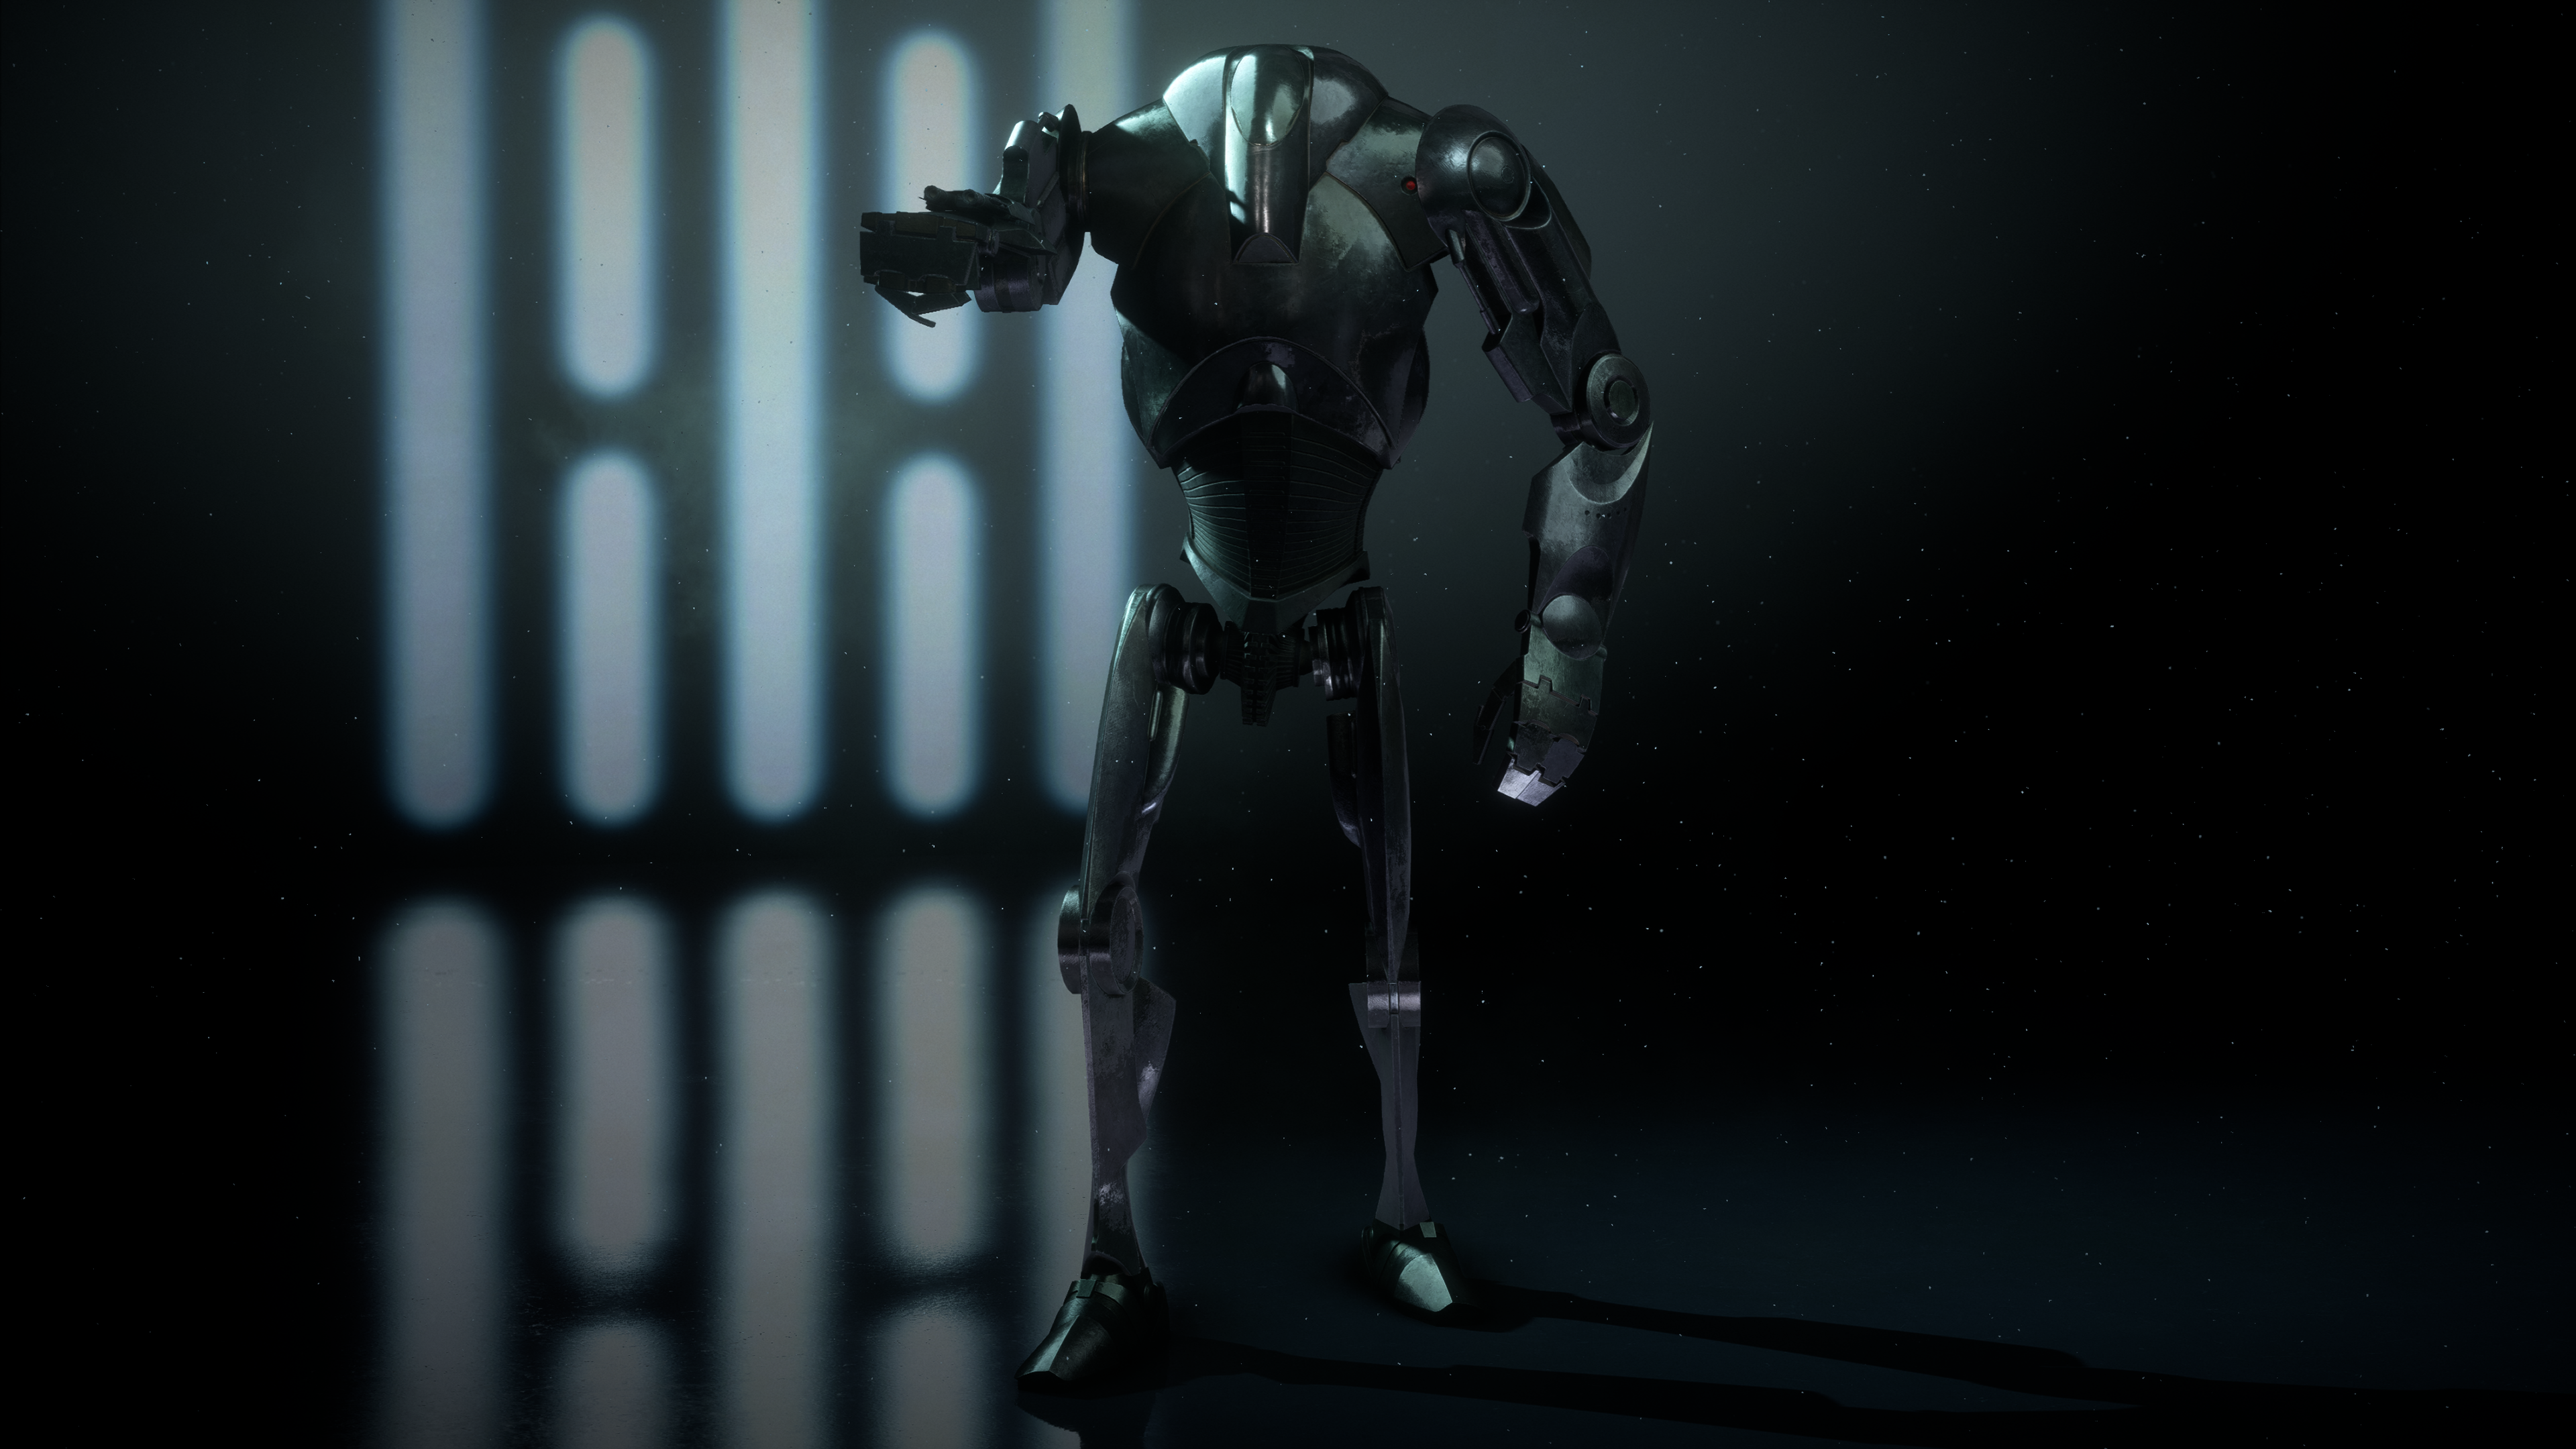 star wars b2 battle droid